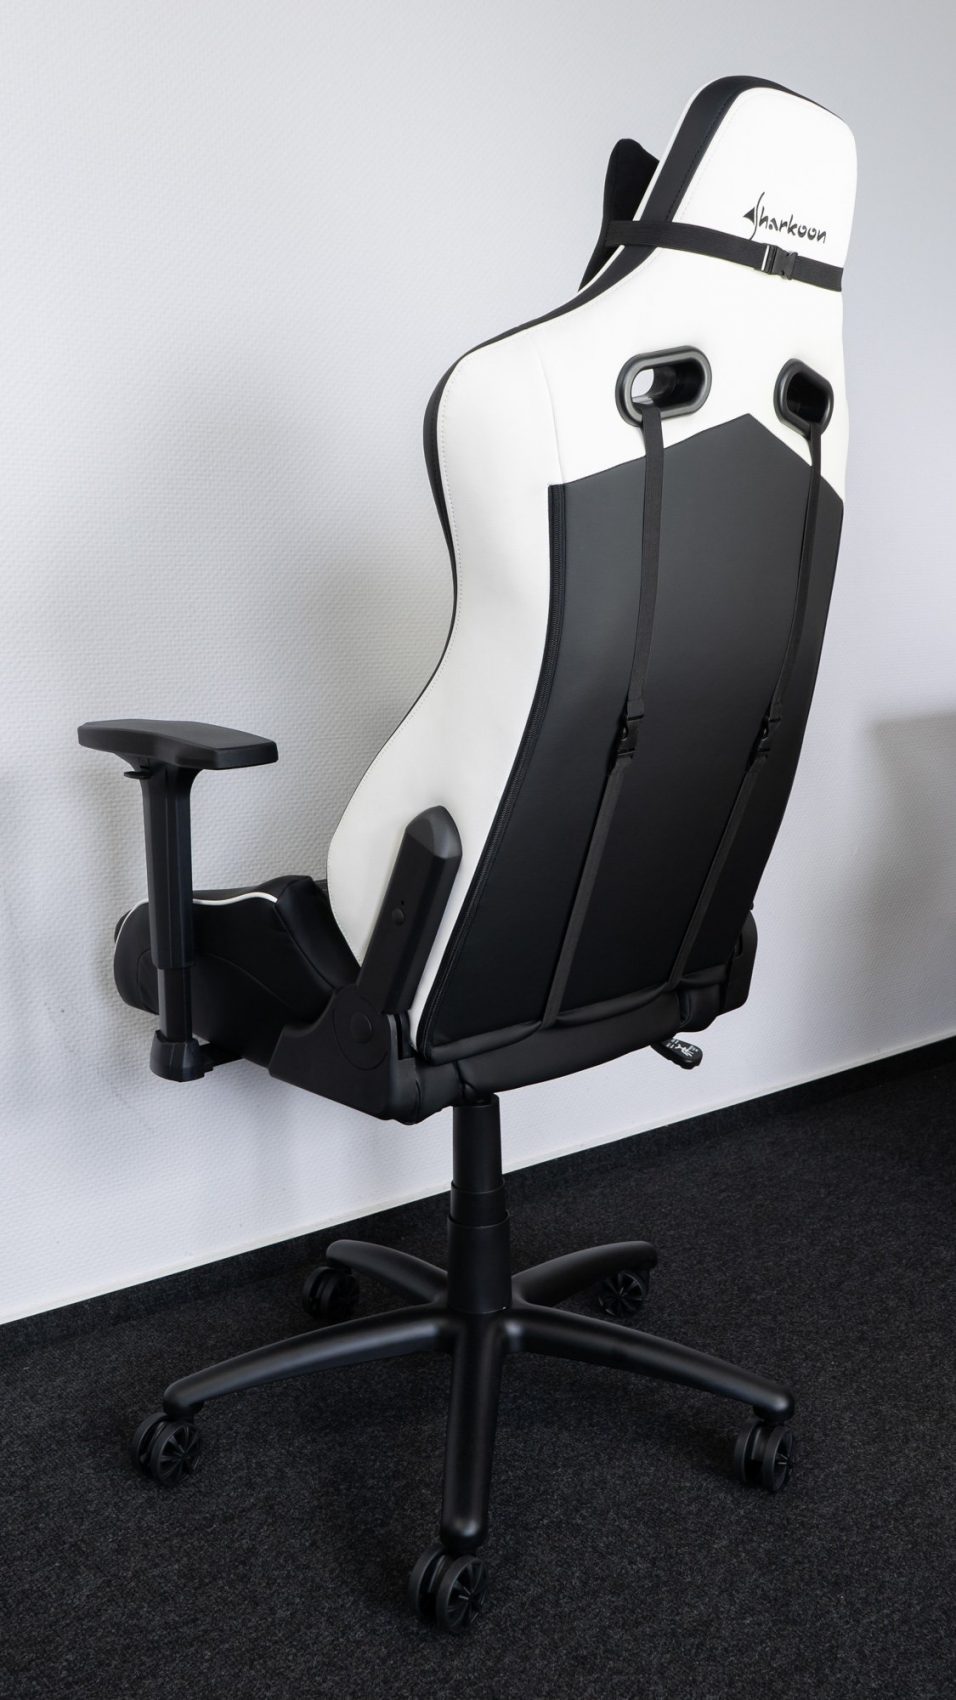 Der Sharkoon Elbrus 3 Gaming-Stuhl sticht besonders mit seinem sportlichen Design hervor.